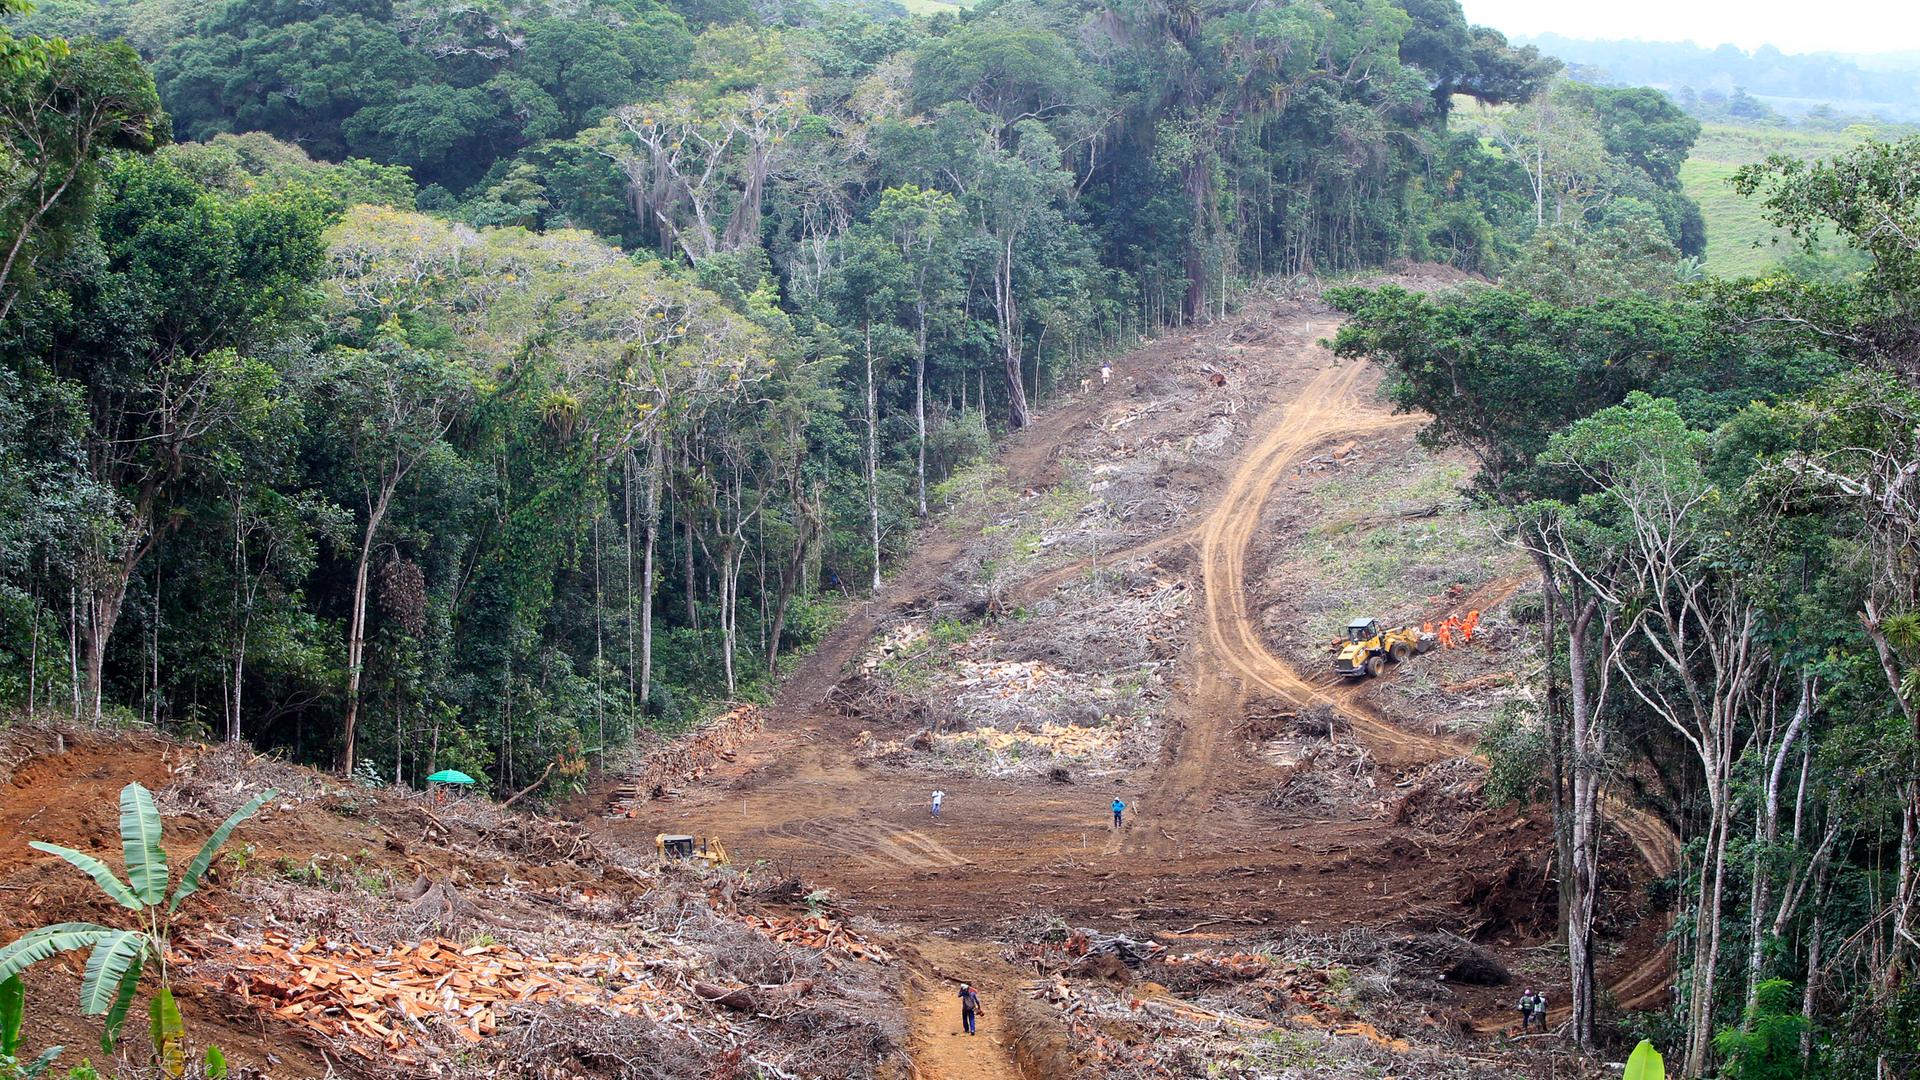 Abgeholzte Fläche im brasilianischen Regenwald